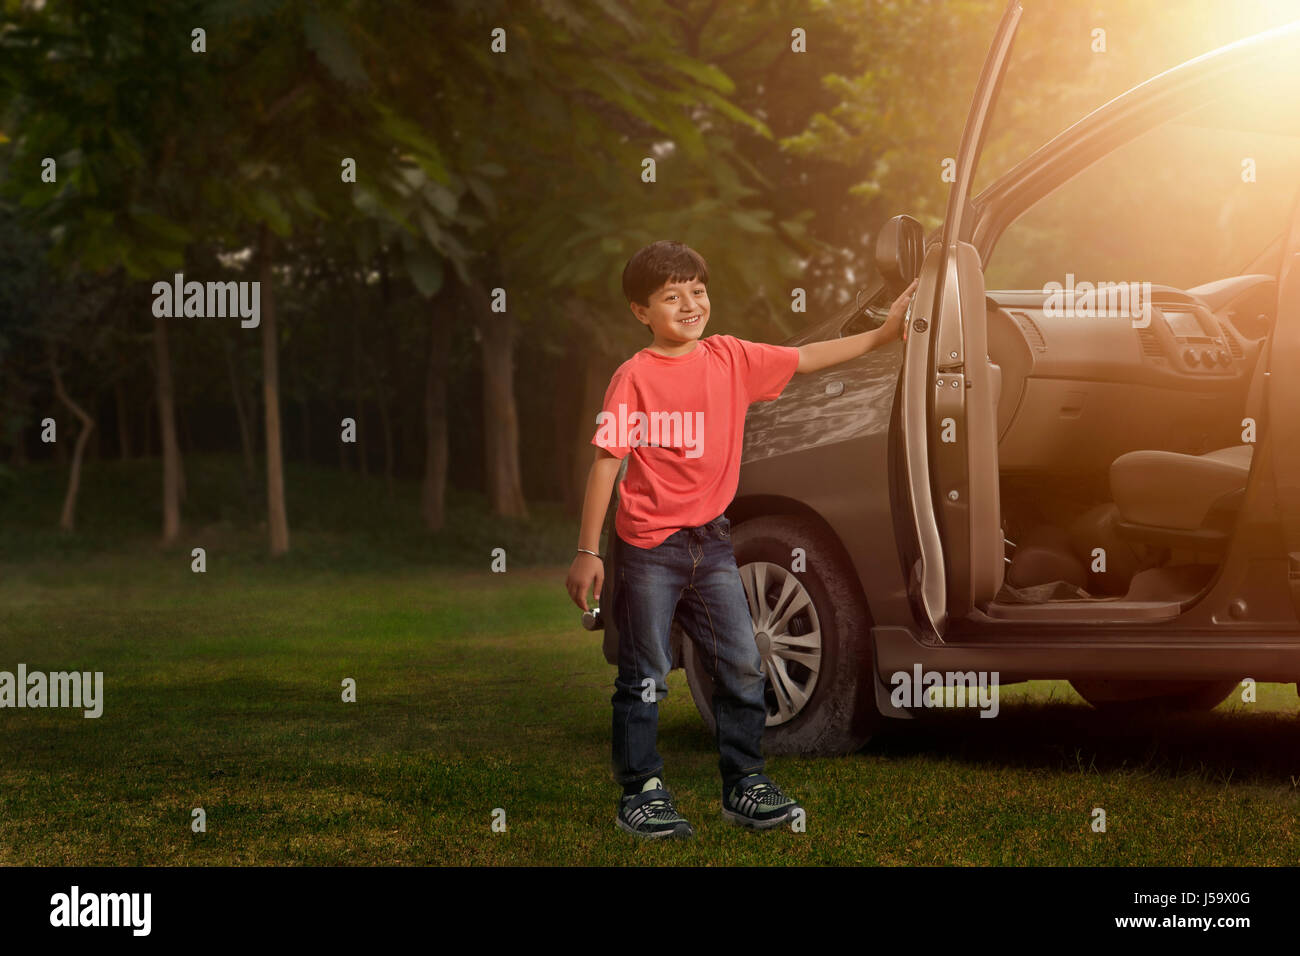 Boy standing near car door in park Stock Photo